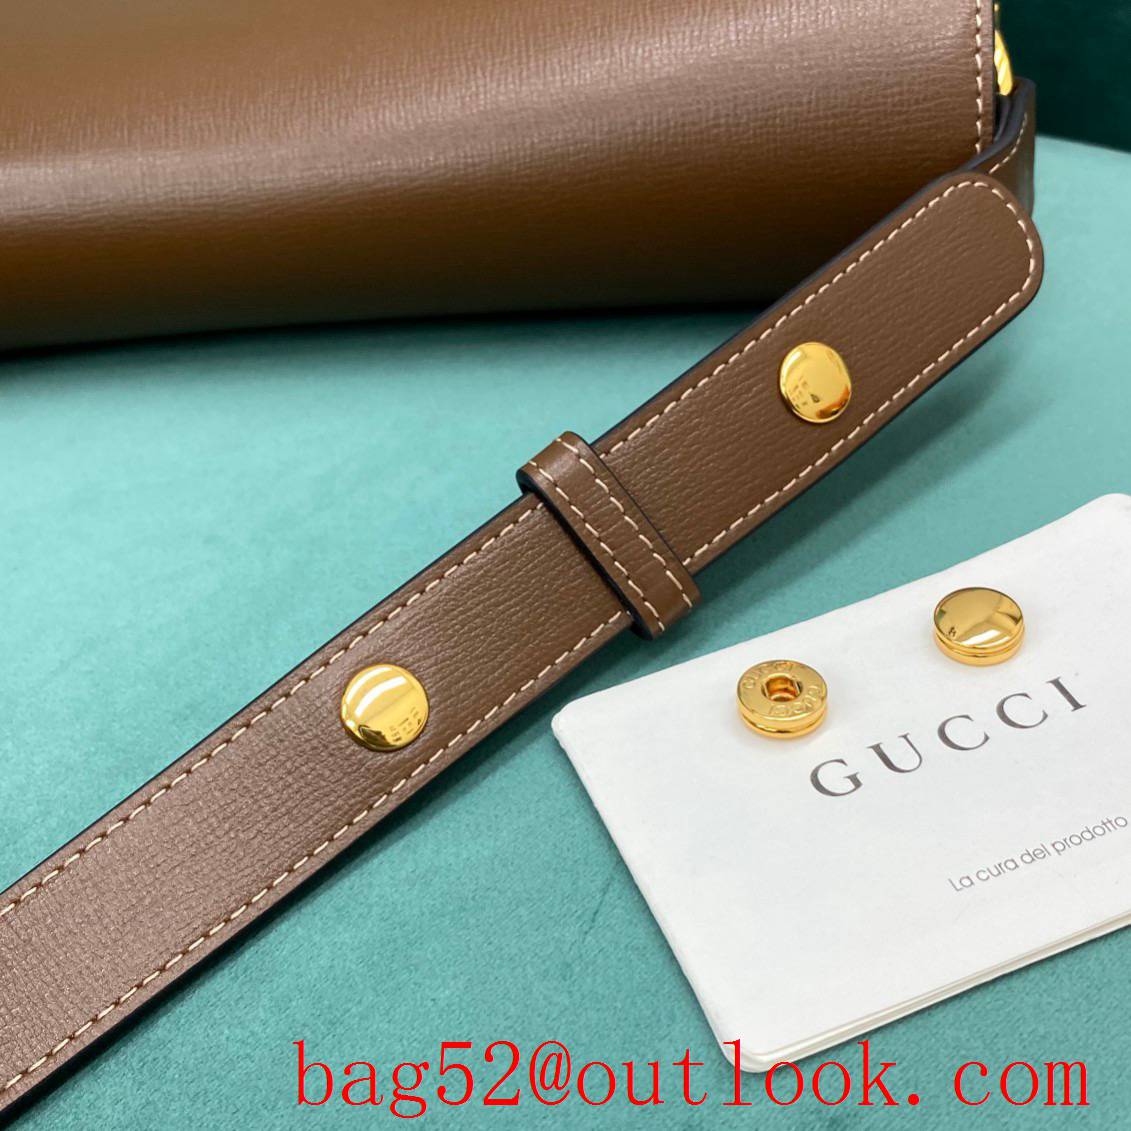 Gucci 1955 Full Leather Saddle brown shoulder handbag